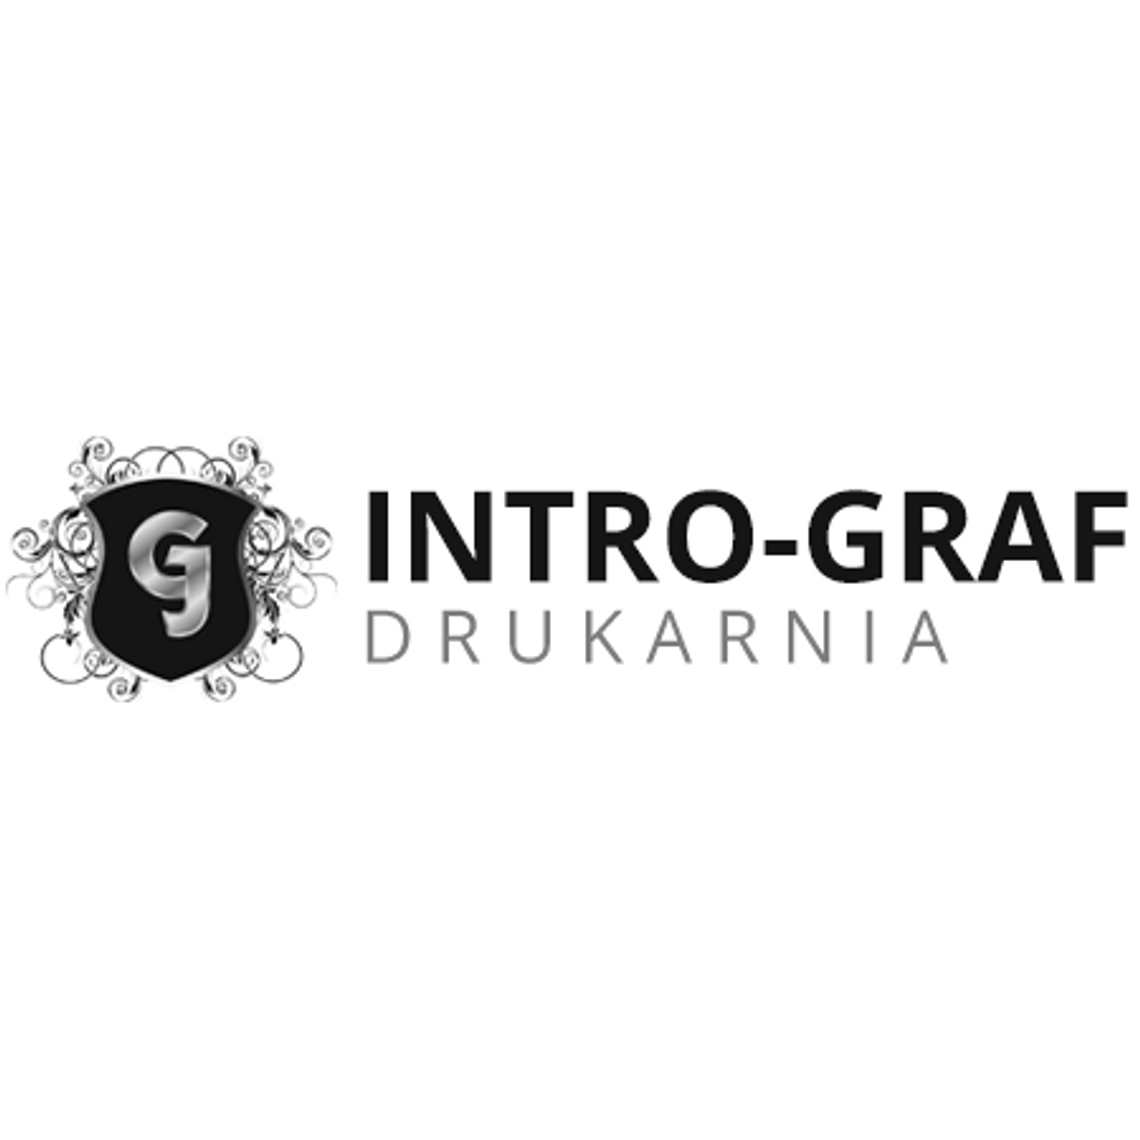 Drukarnia INTRO-GRAF